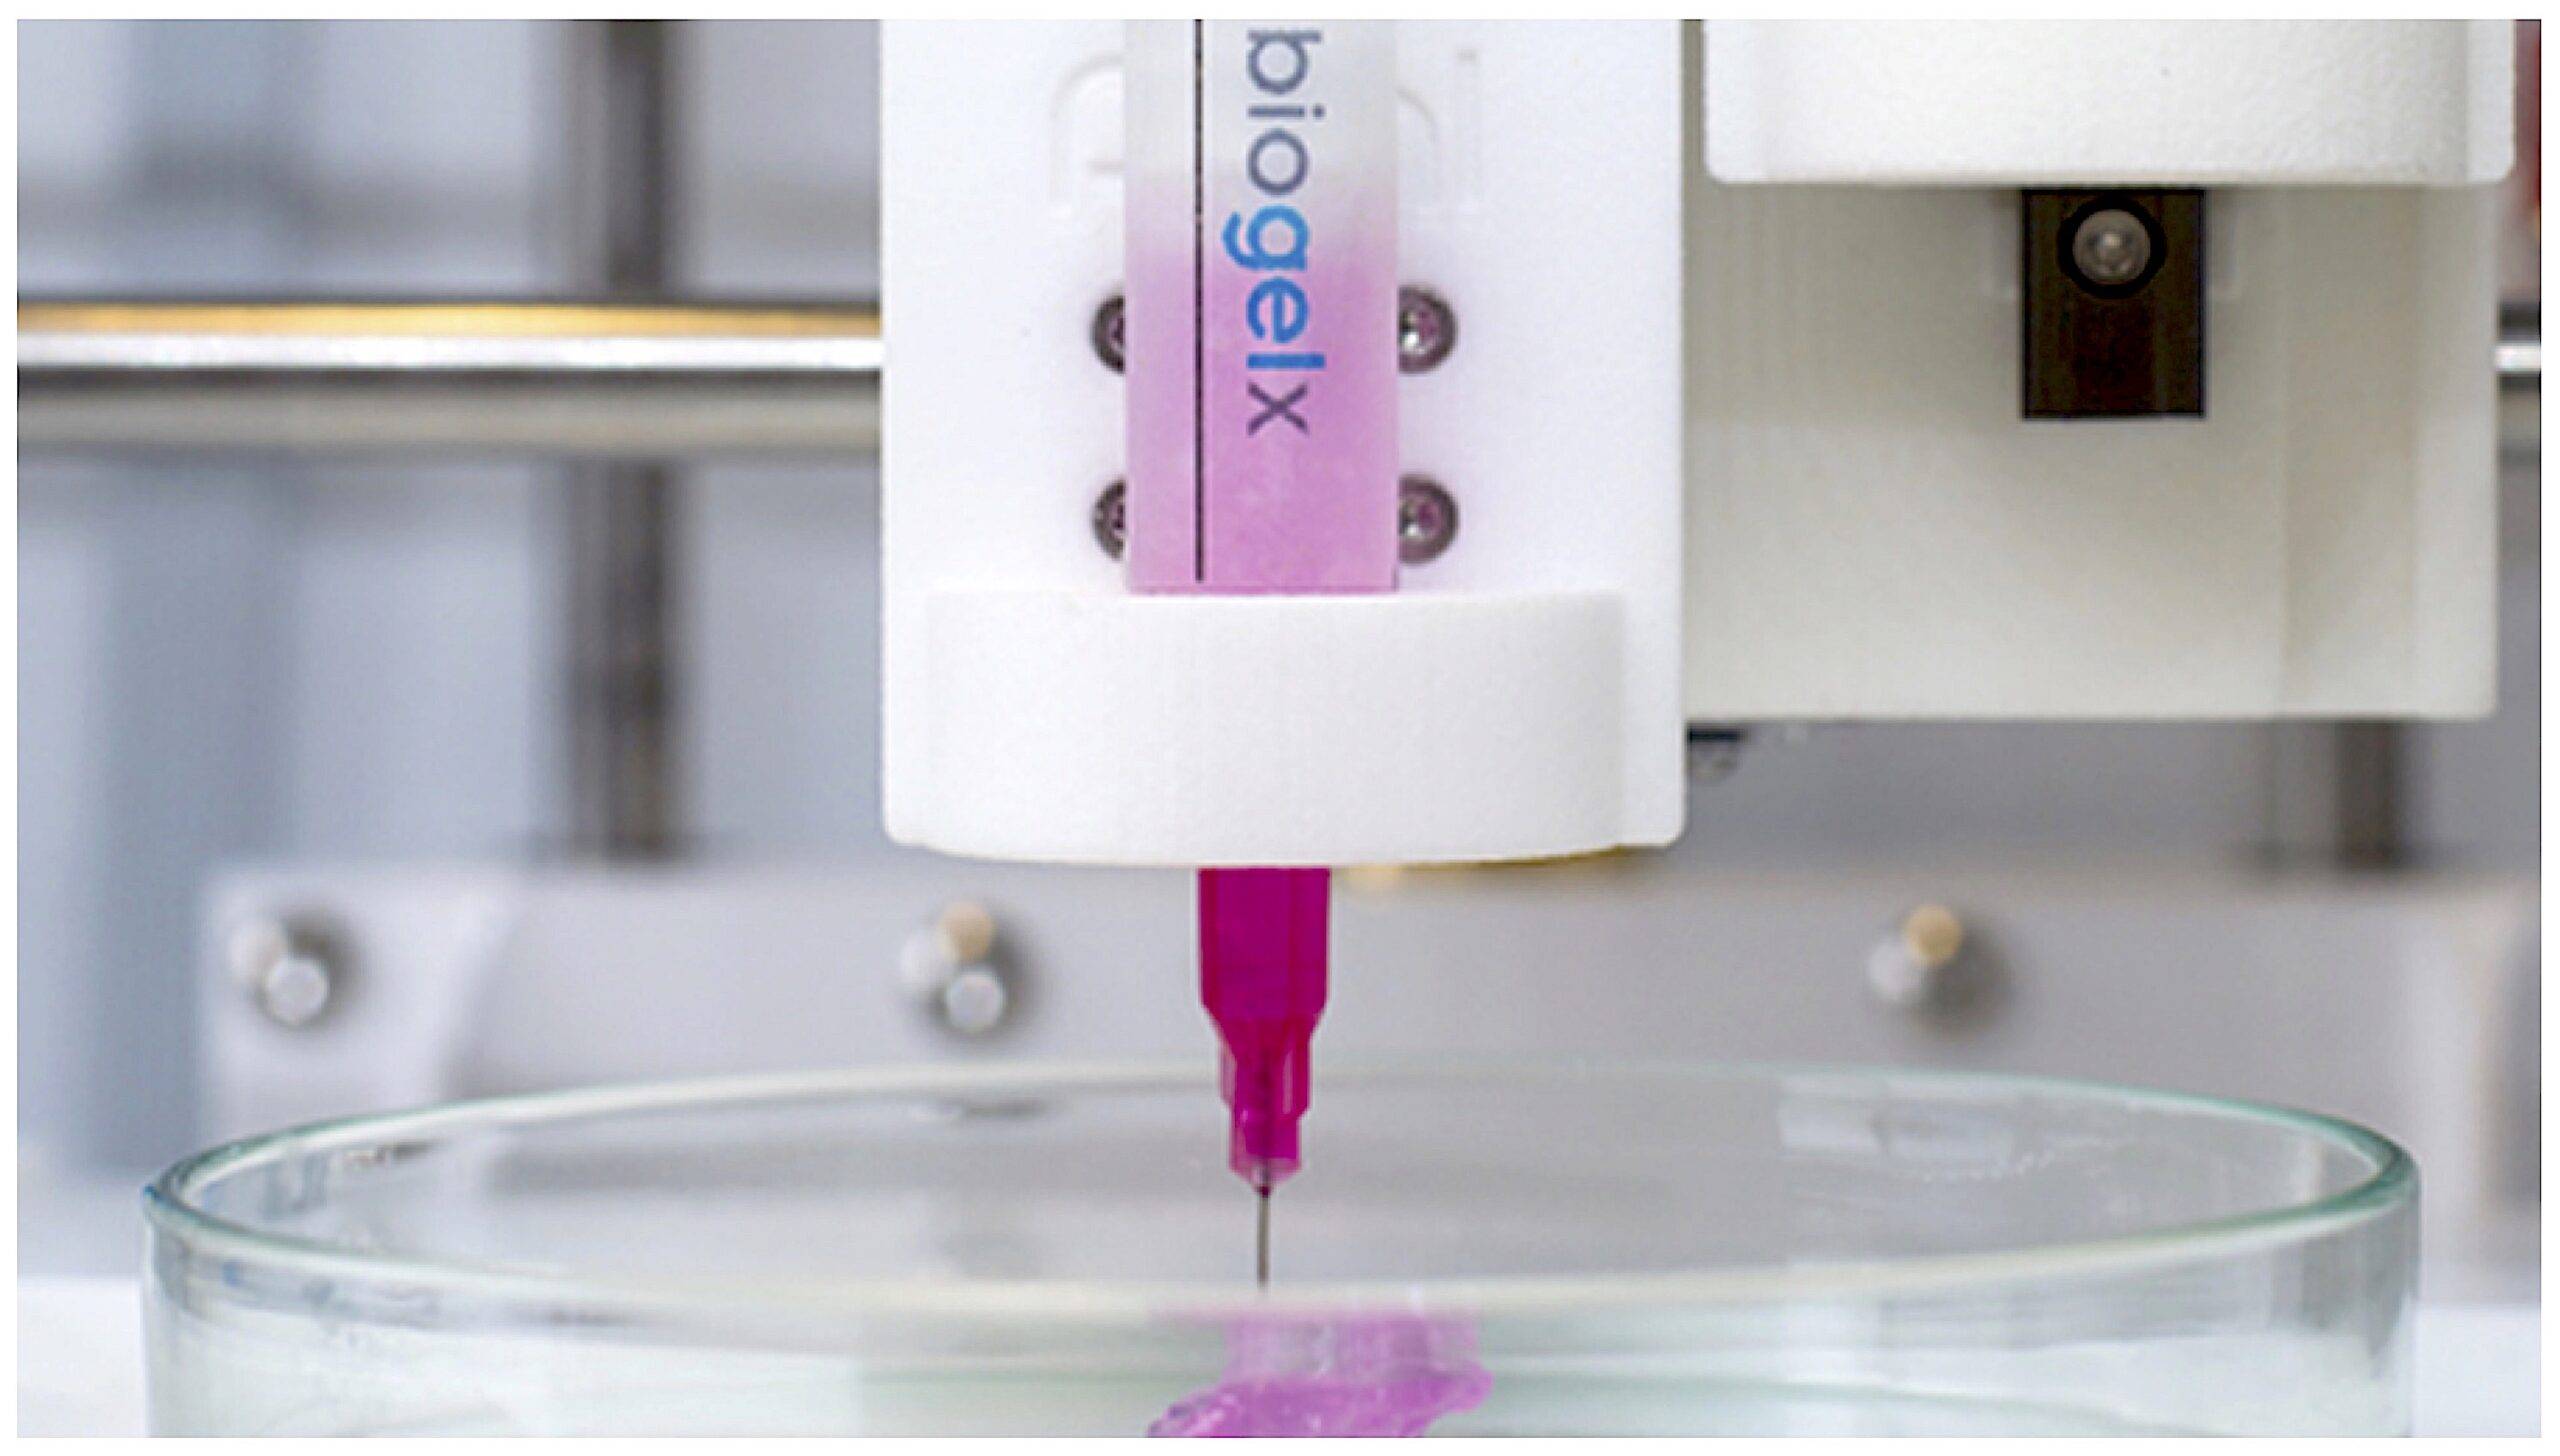 Biogelx Bioprinting scaled